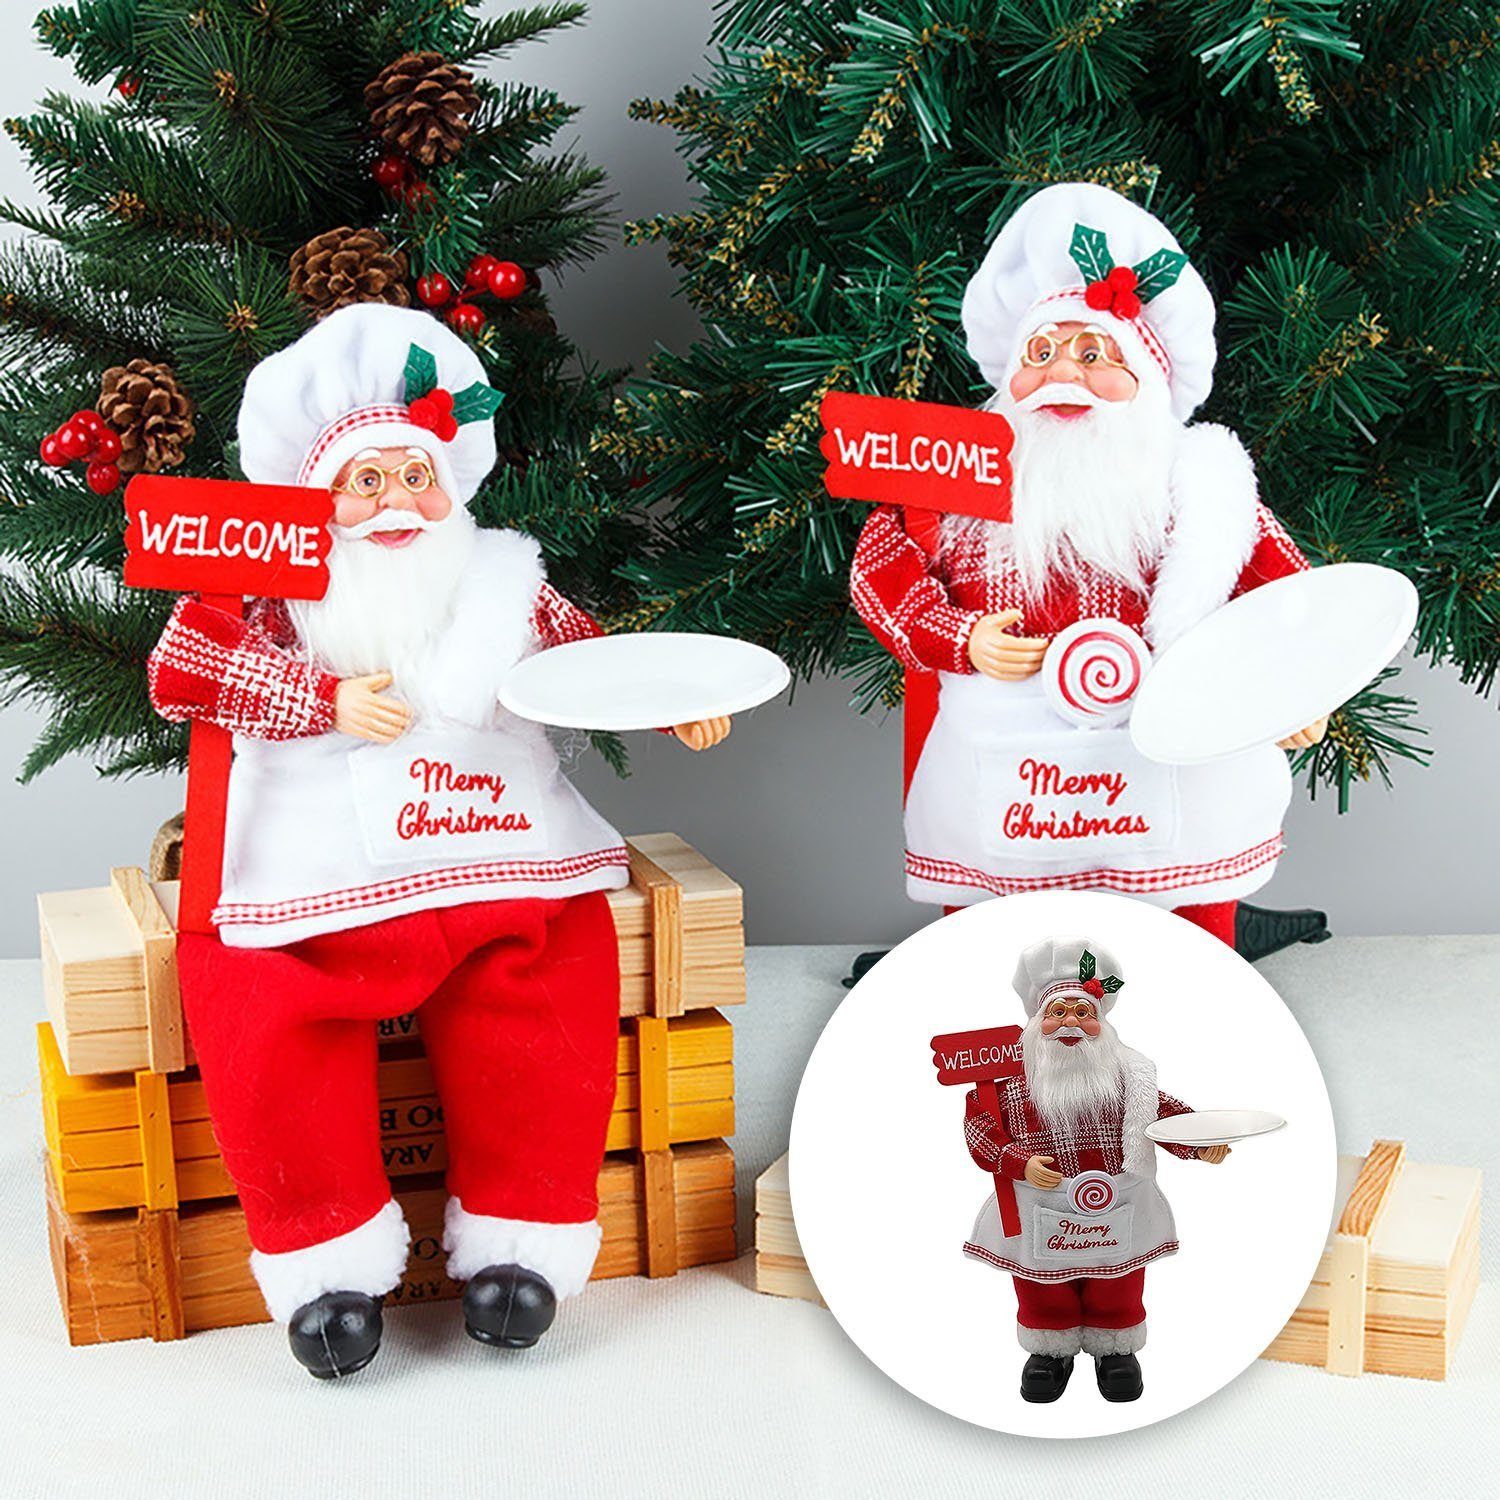 MAGICSHE Weihnachtsmann Dekorationen, Chef Figurinen Puppe Weihnachten Stehen Weihnachtsdekoration